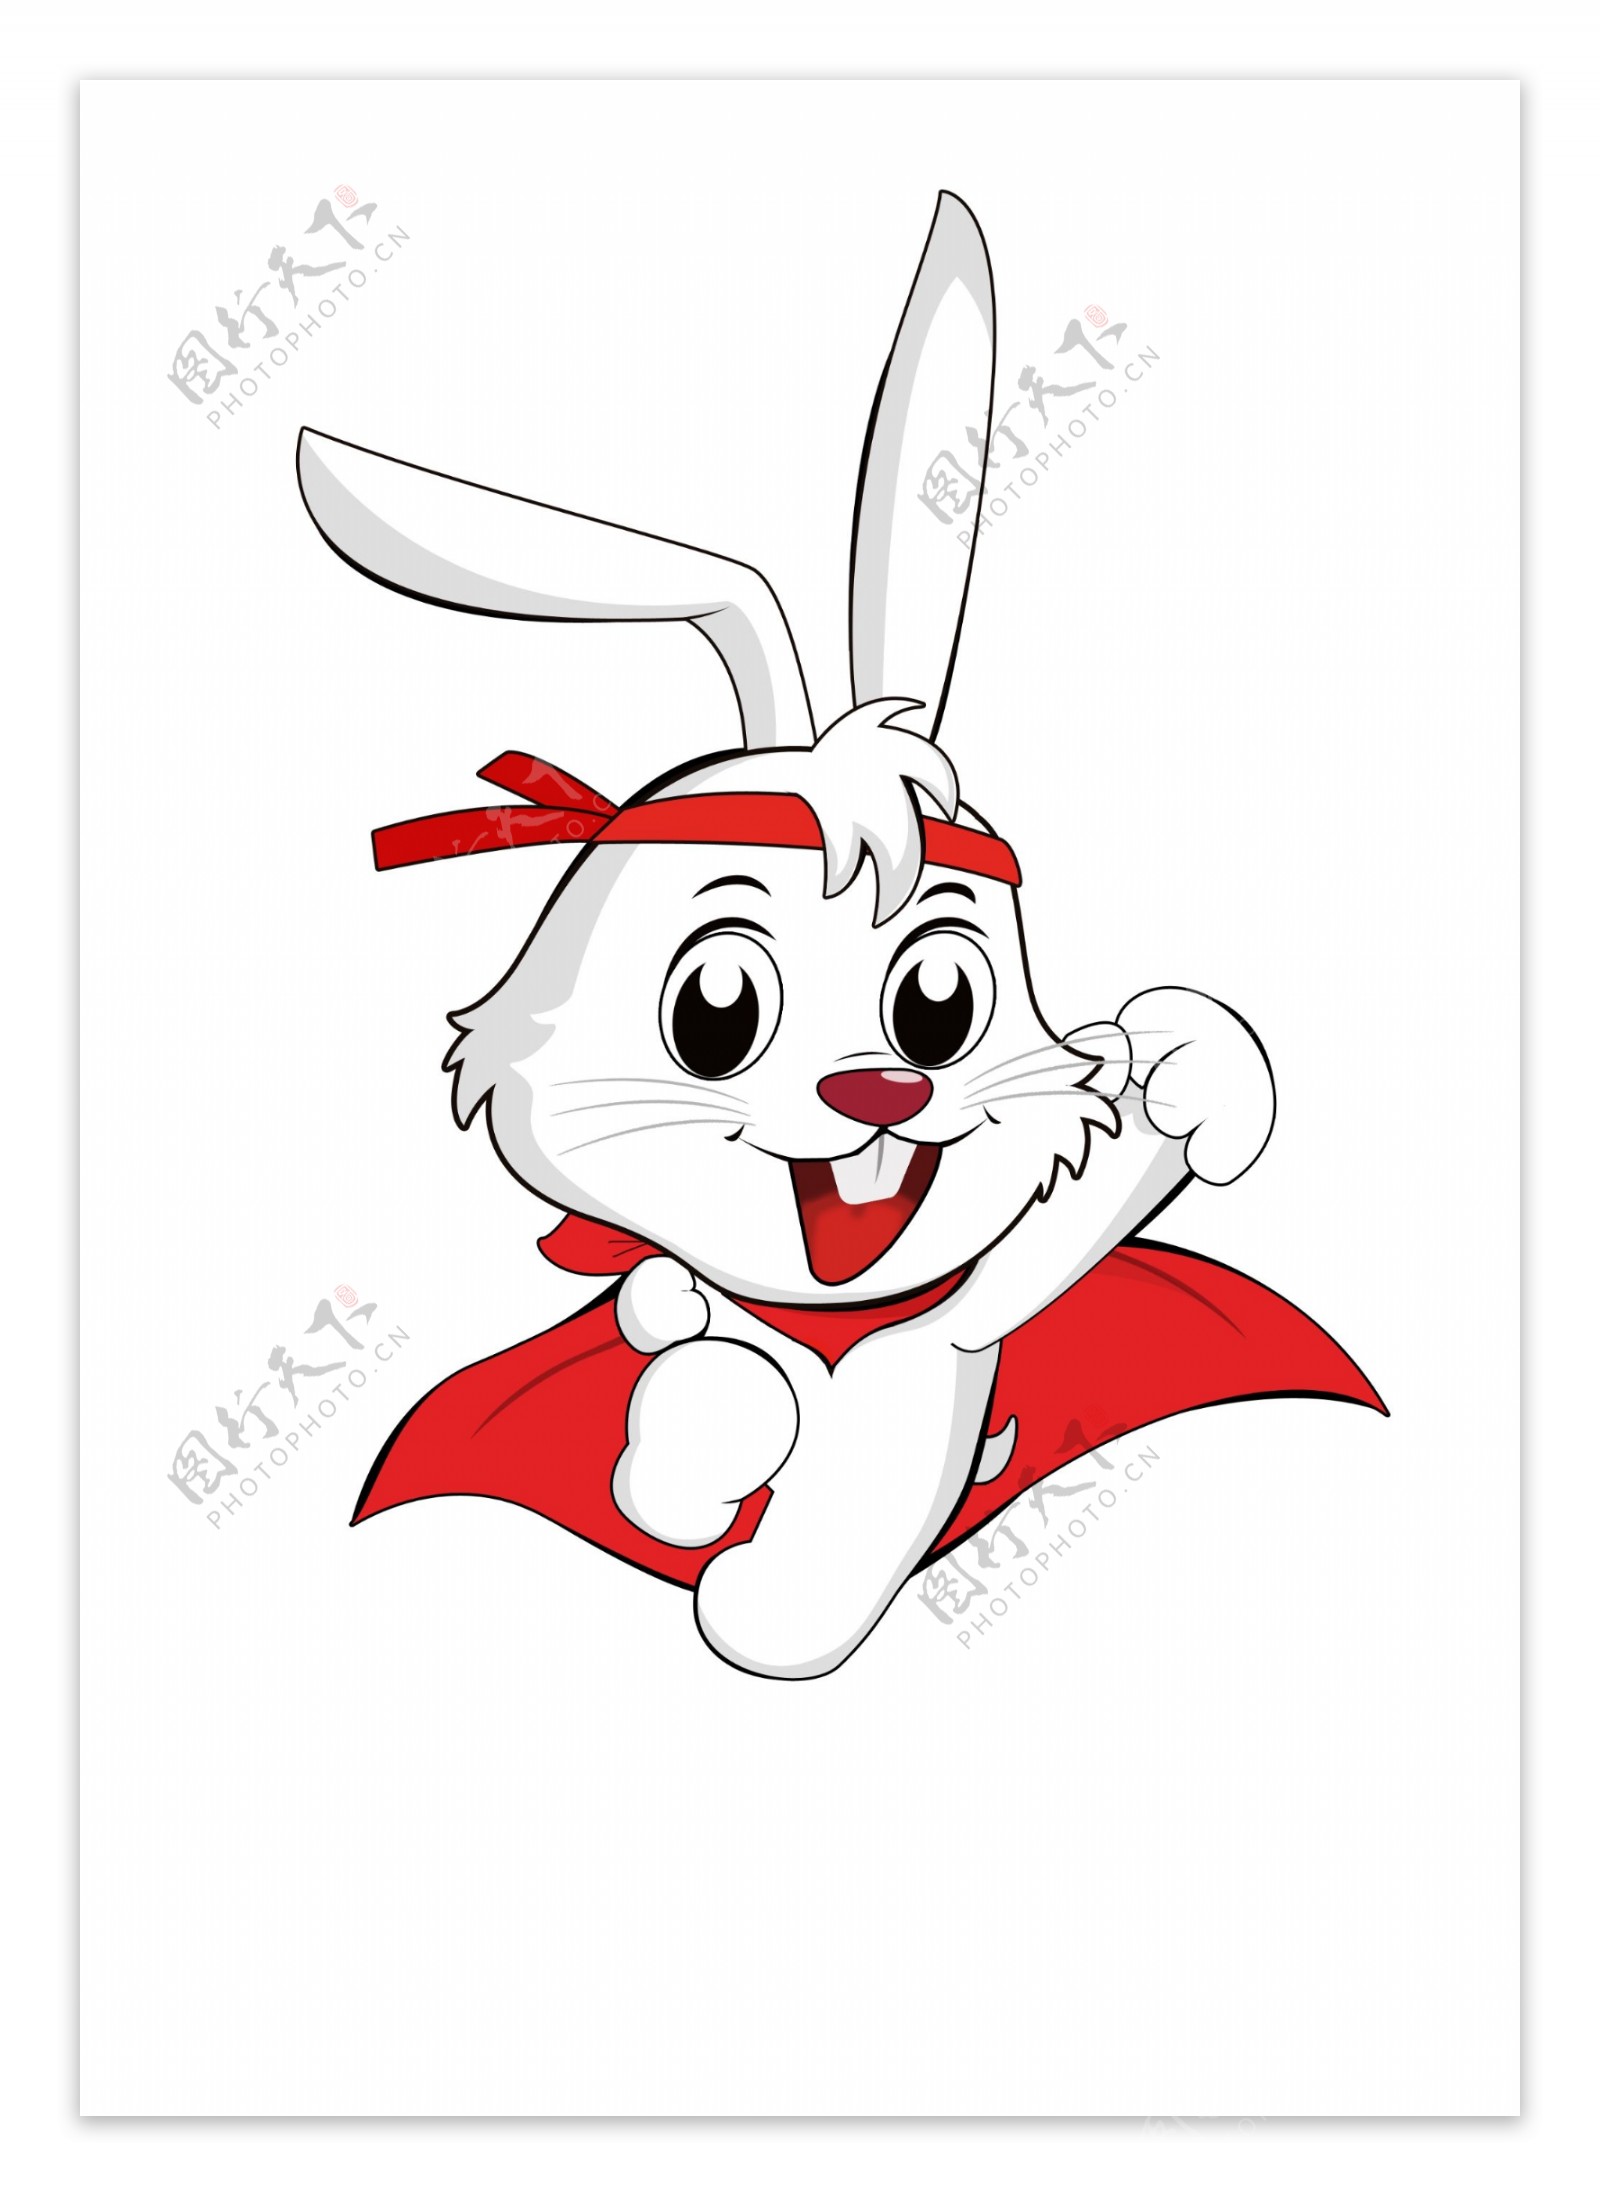 兔子吉祥物